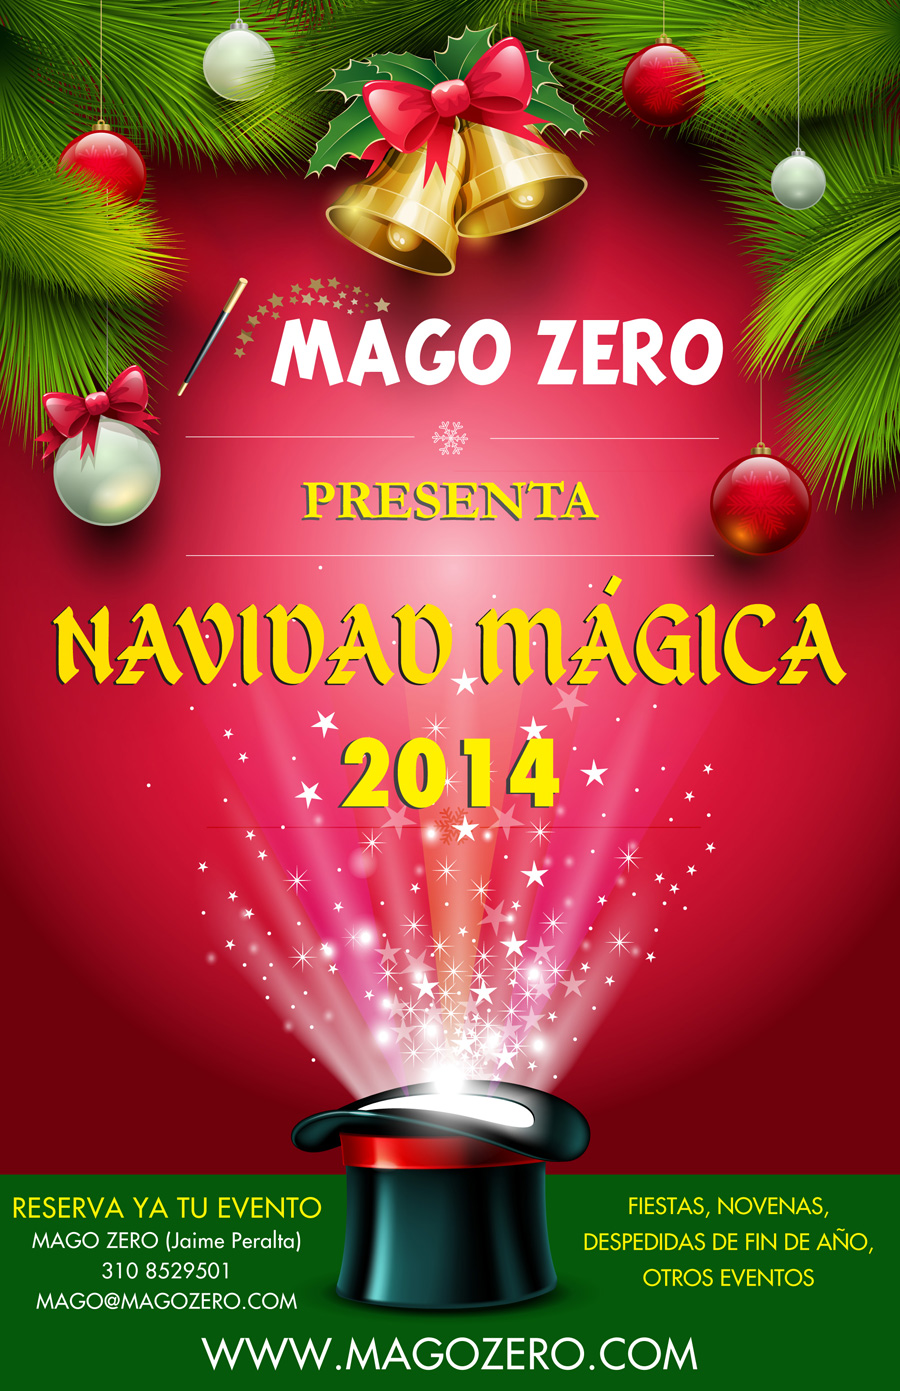 Navidad magica 2014